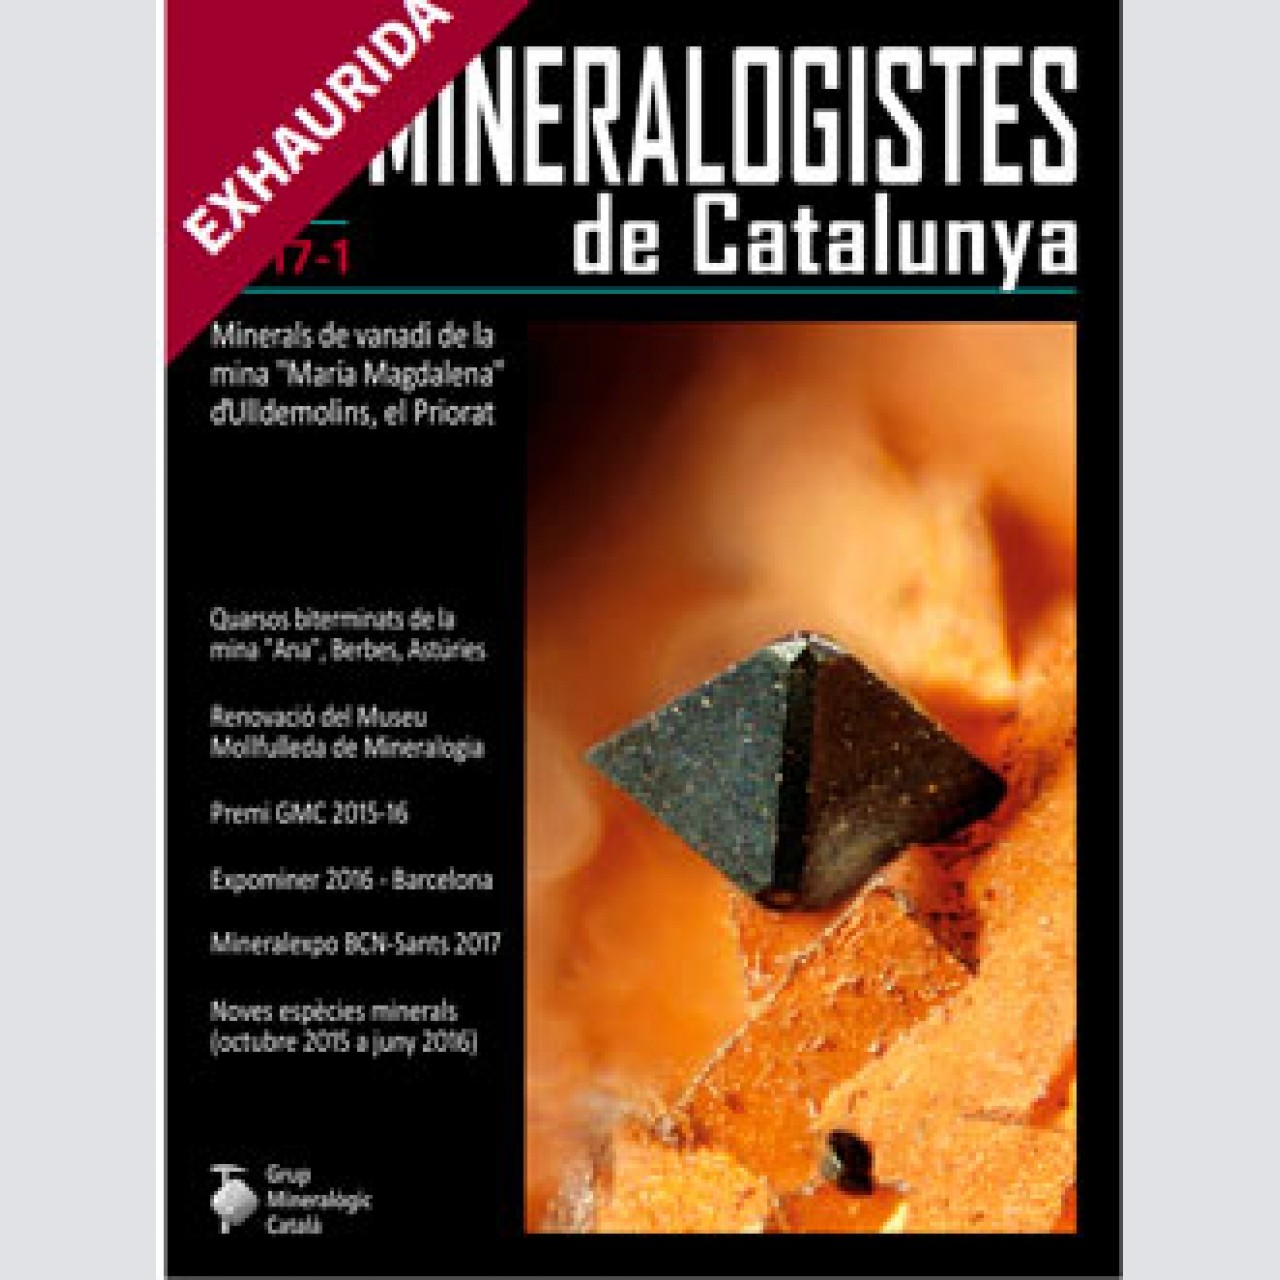 Mineralogistes de Catalunya (2017-1)